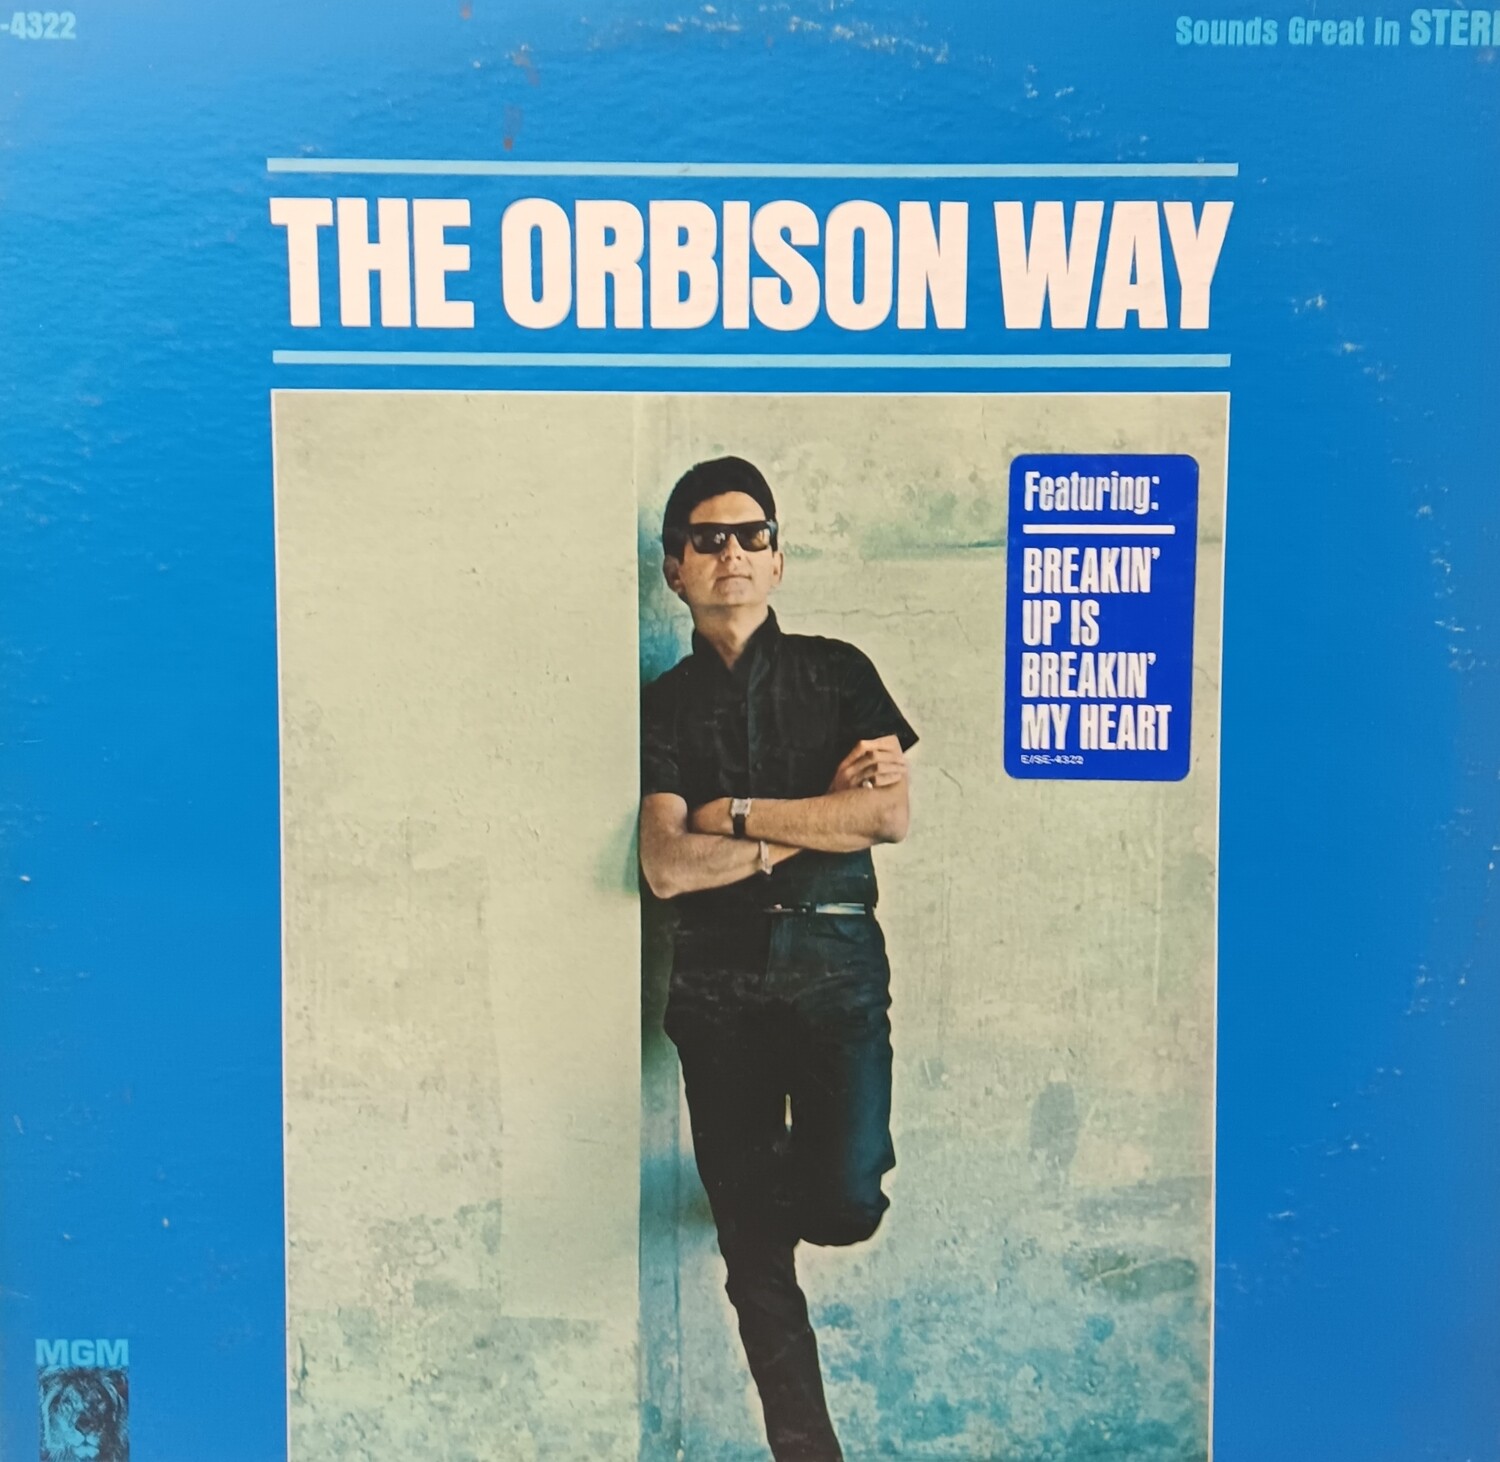 ROY ORBISON - The Orbison Way